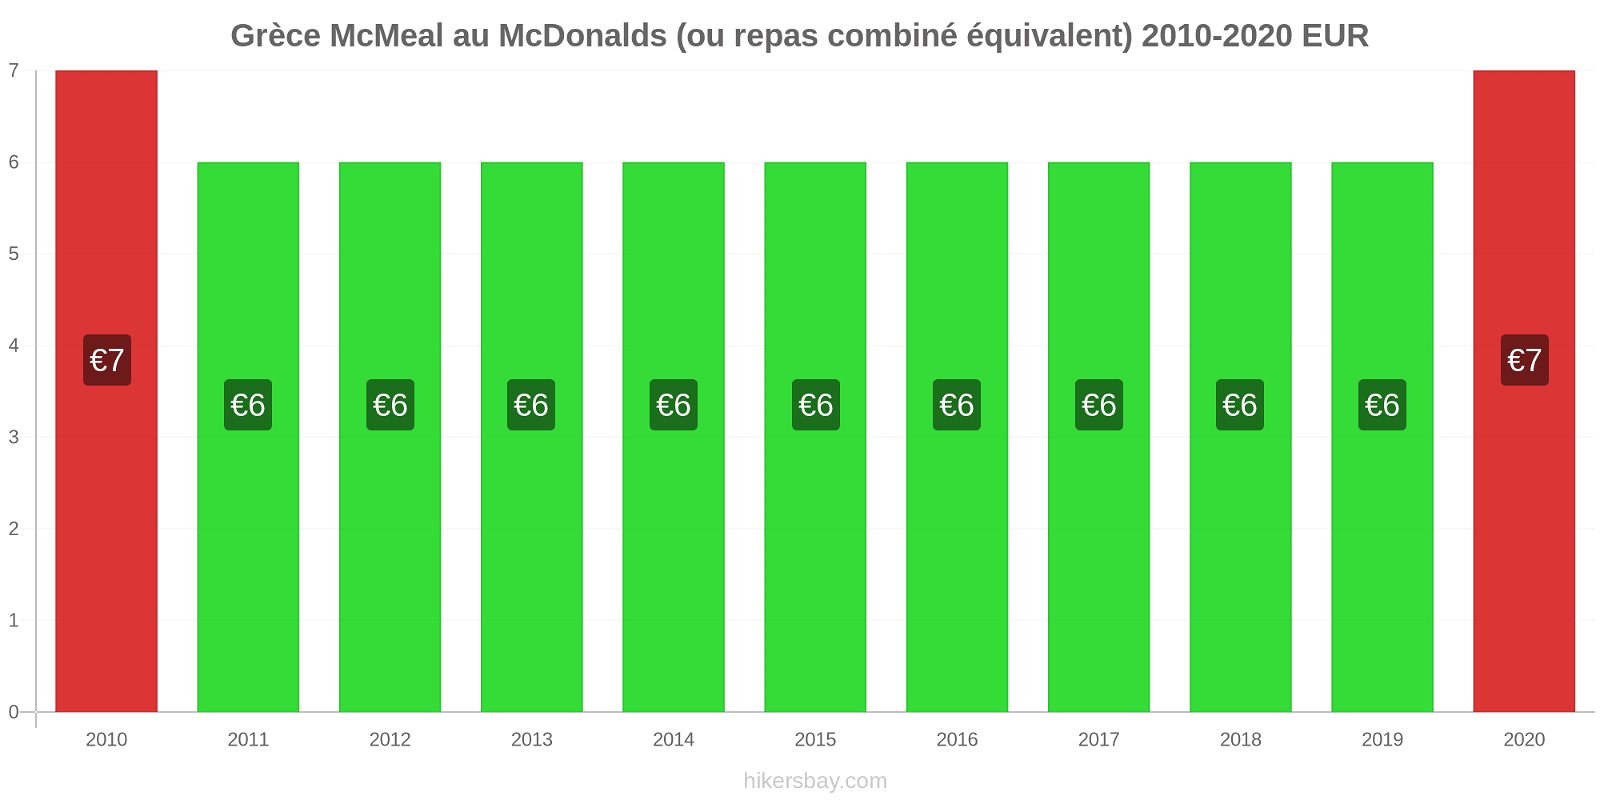 Grèce changements de prix McMeal à McDonald ' s (ou Combo équivalent tourteau) hikersbay.com